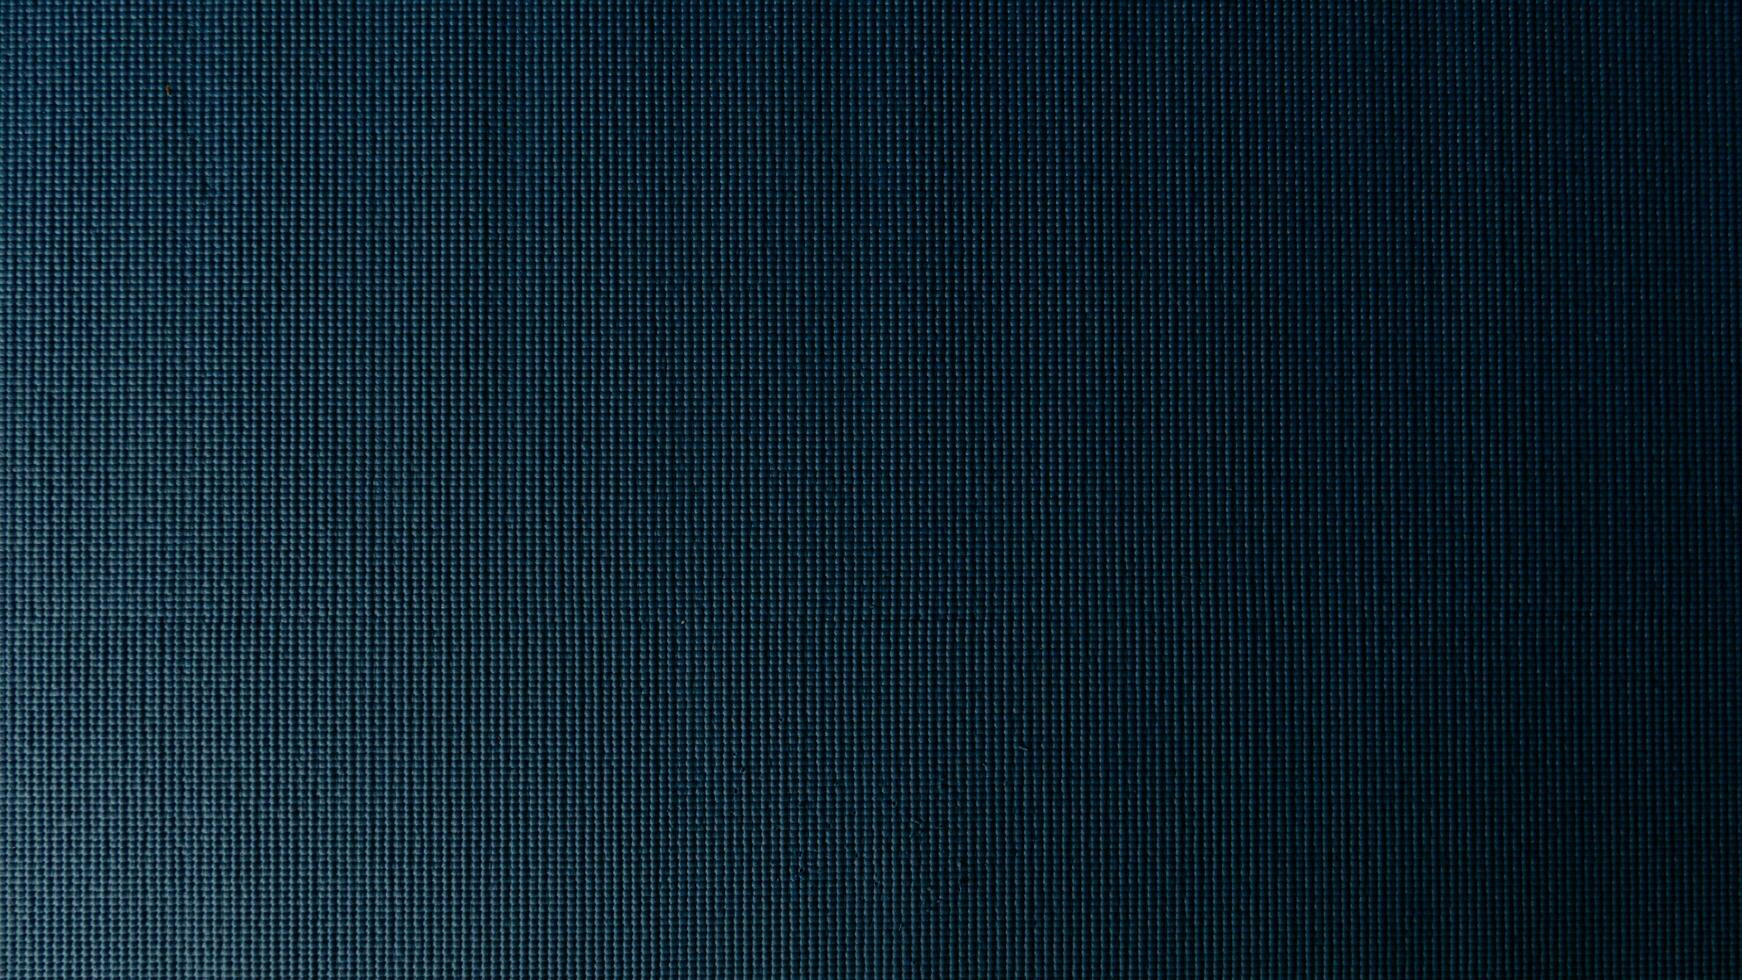 ovan se golv av mjuk matta tillverkad från syntetisk sudd plast med en blå akvarell-stil yta. för bakgrund och texturerat. foto